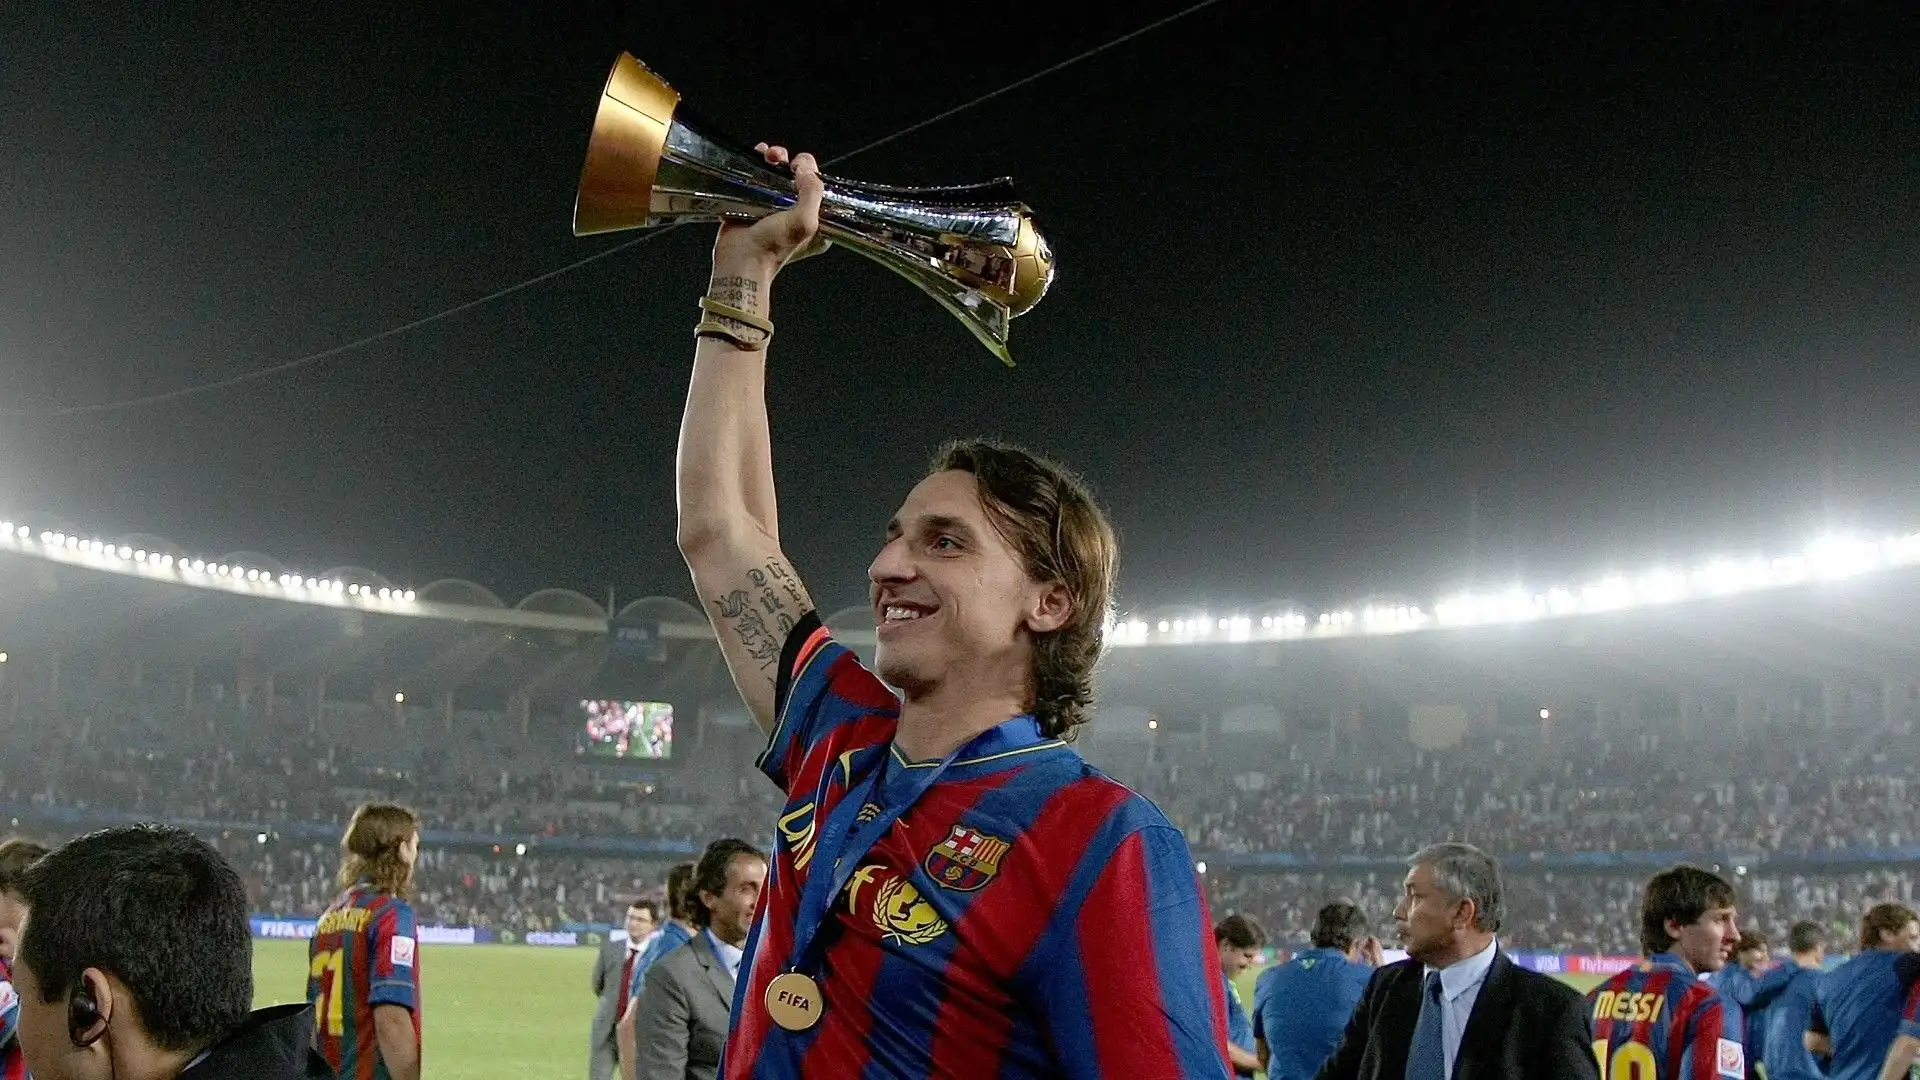 Coppa del mondo per club: 1 (Barcellona: 2009)